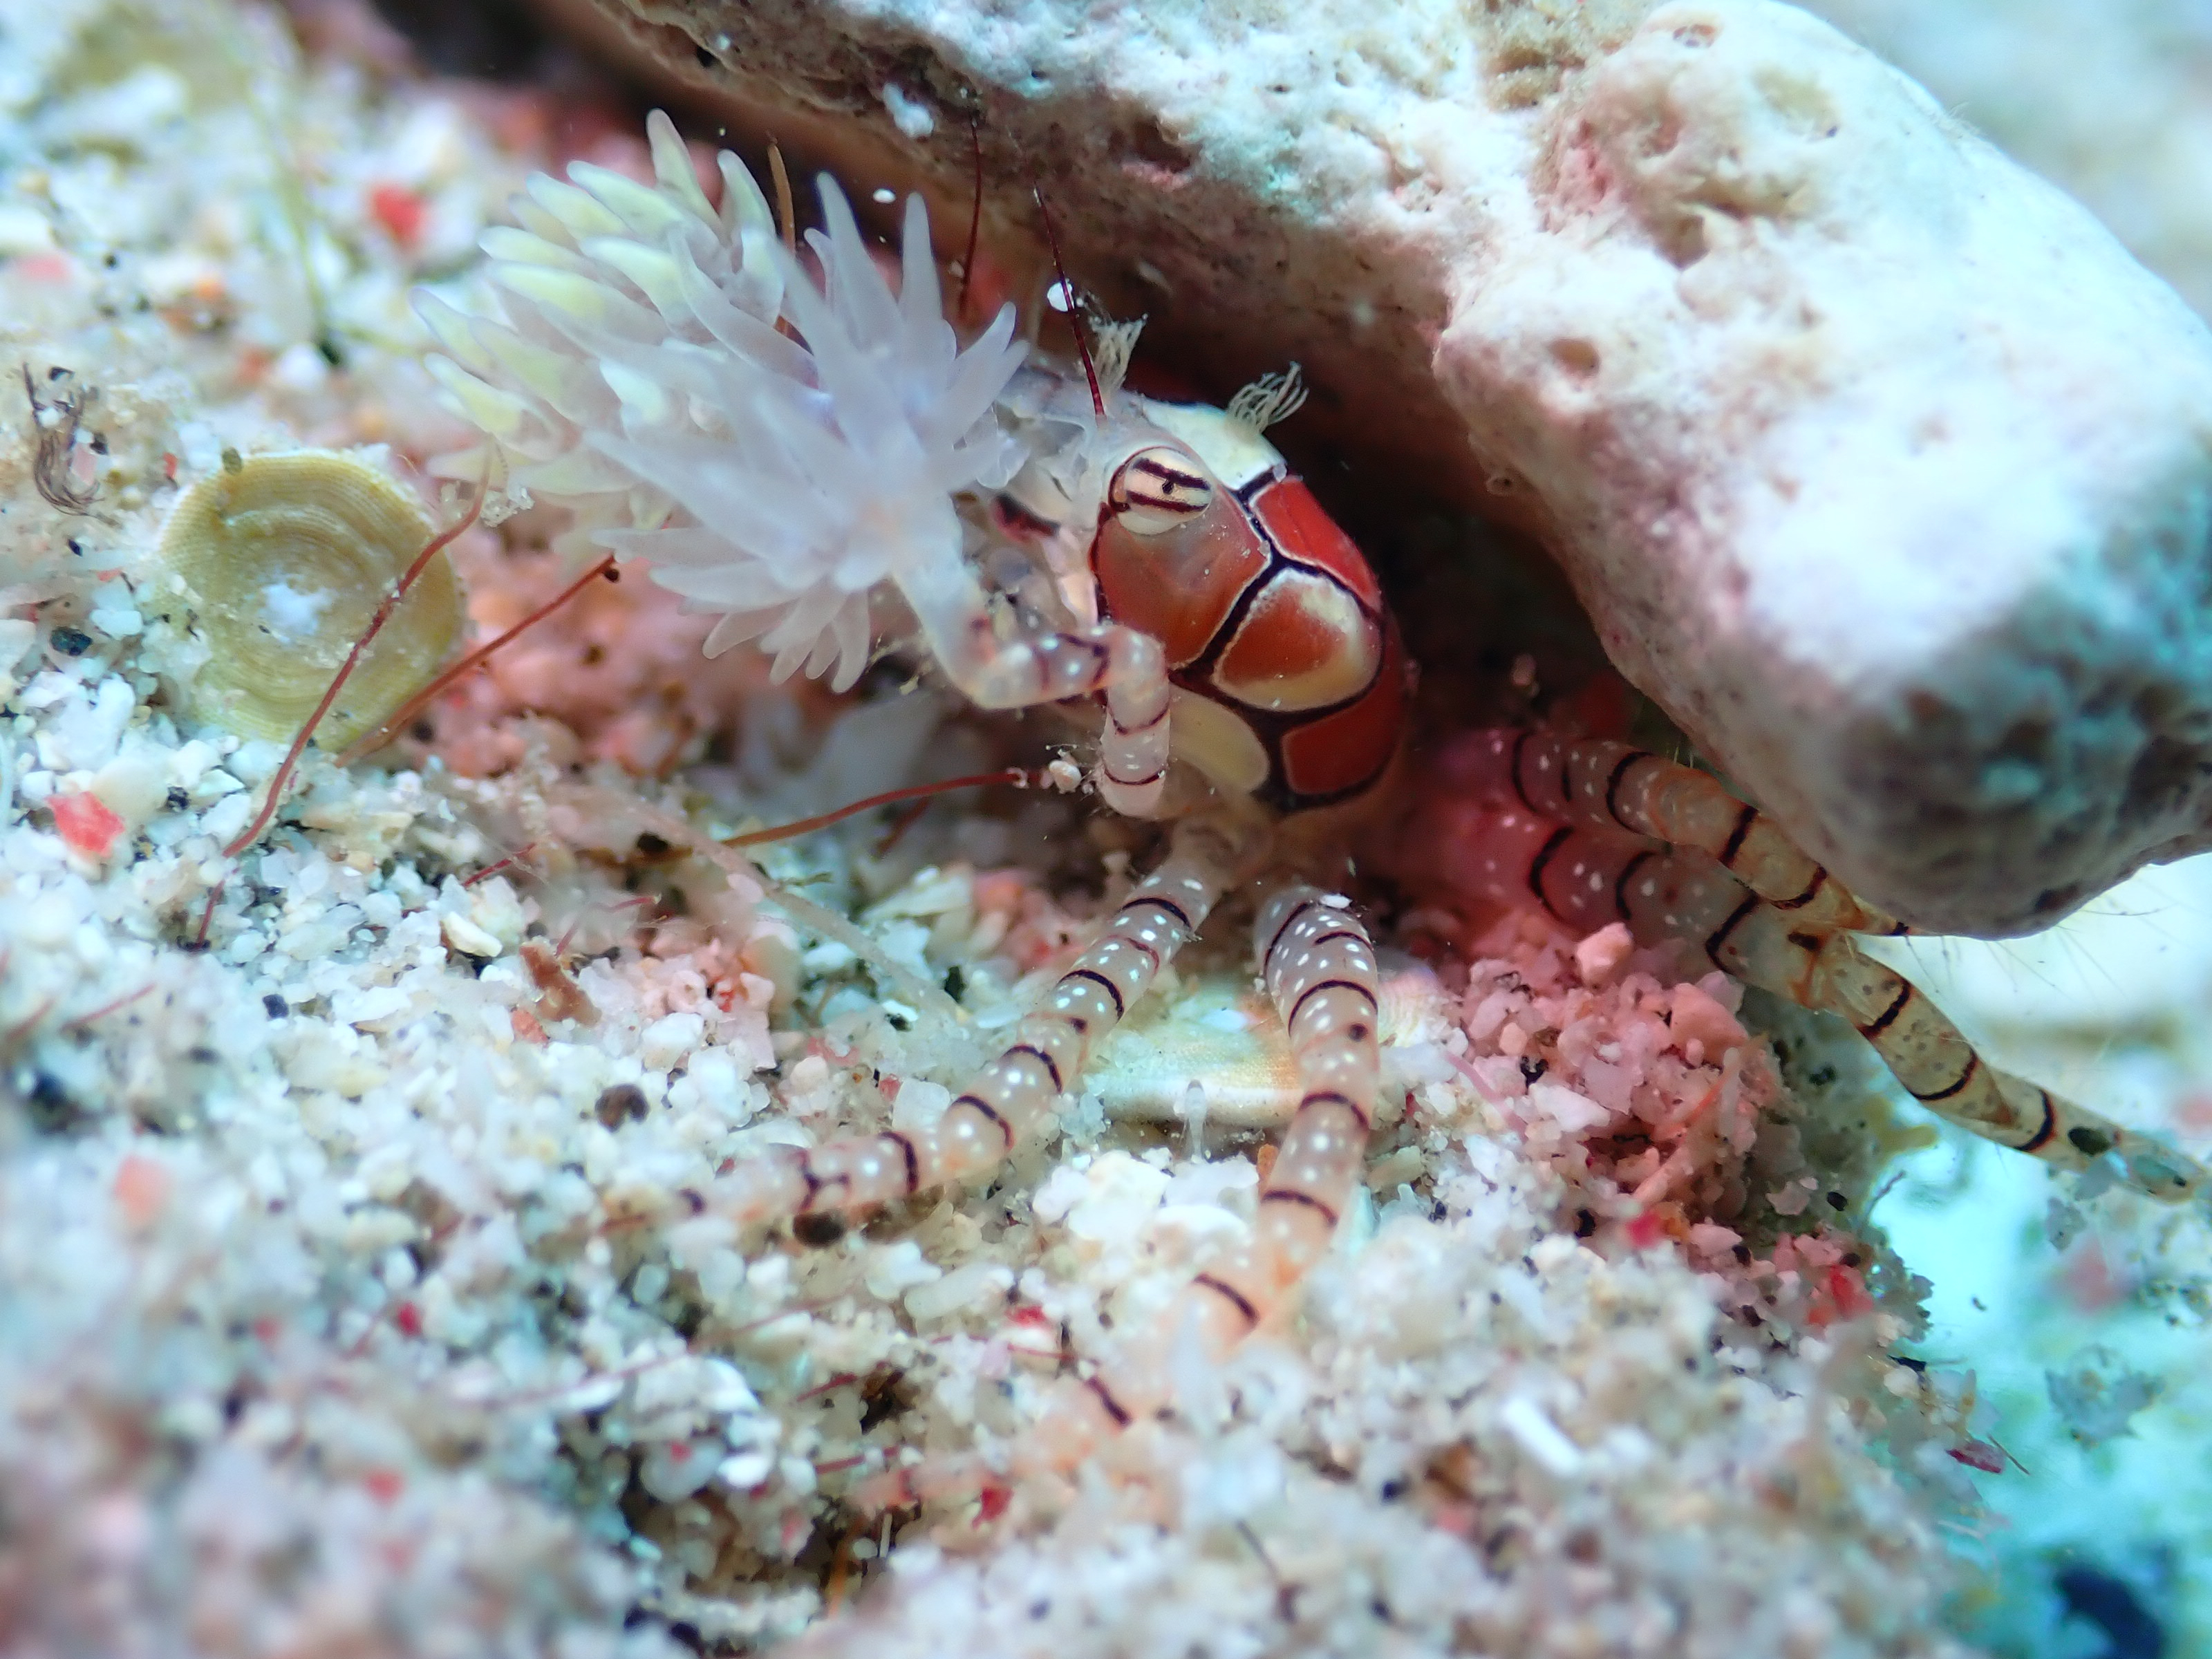 花紋細螯蟹（Lybia tessellata），又被稱作拳擊蟹、啦啦隊蟹，十年前我在潛水雜誌上看過，親眼見到則是十年後的綠島。